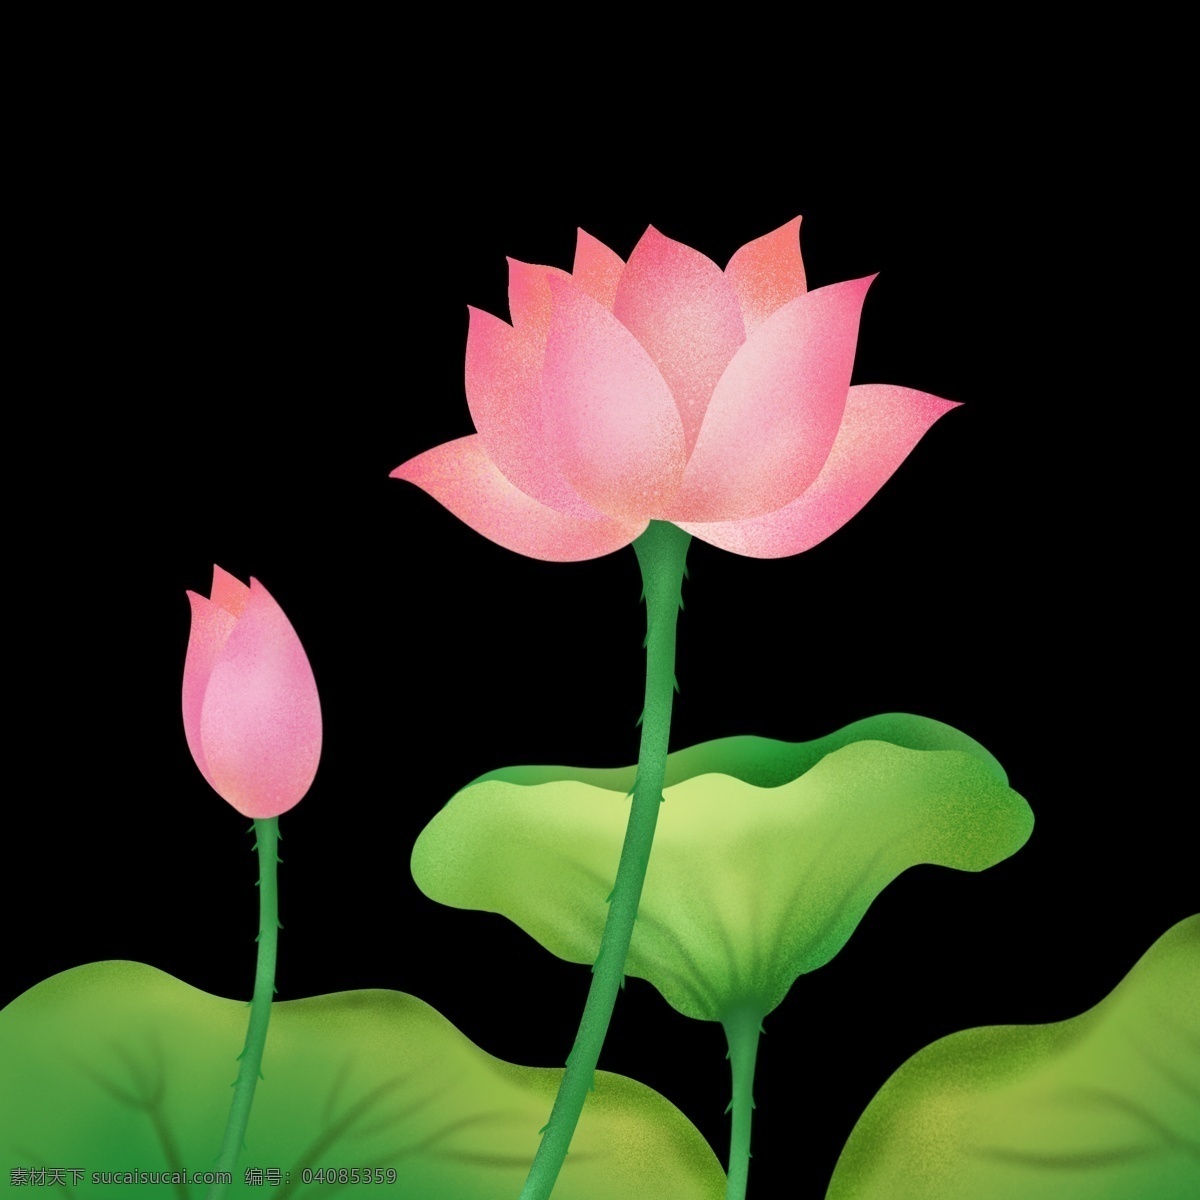 夏季 荷花 花朵 免 抠 图 夏日荷塘 季节 节日 粉色荷花 手绘花朵 绿色荷叶 夏日海报 中国风海报